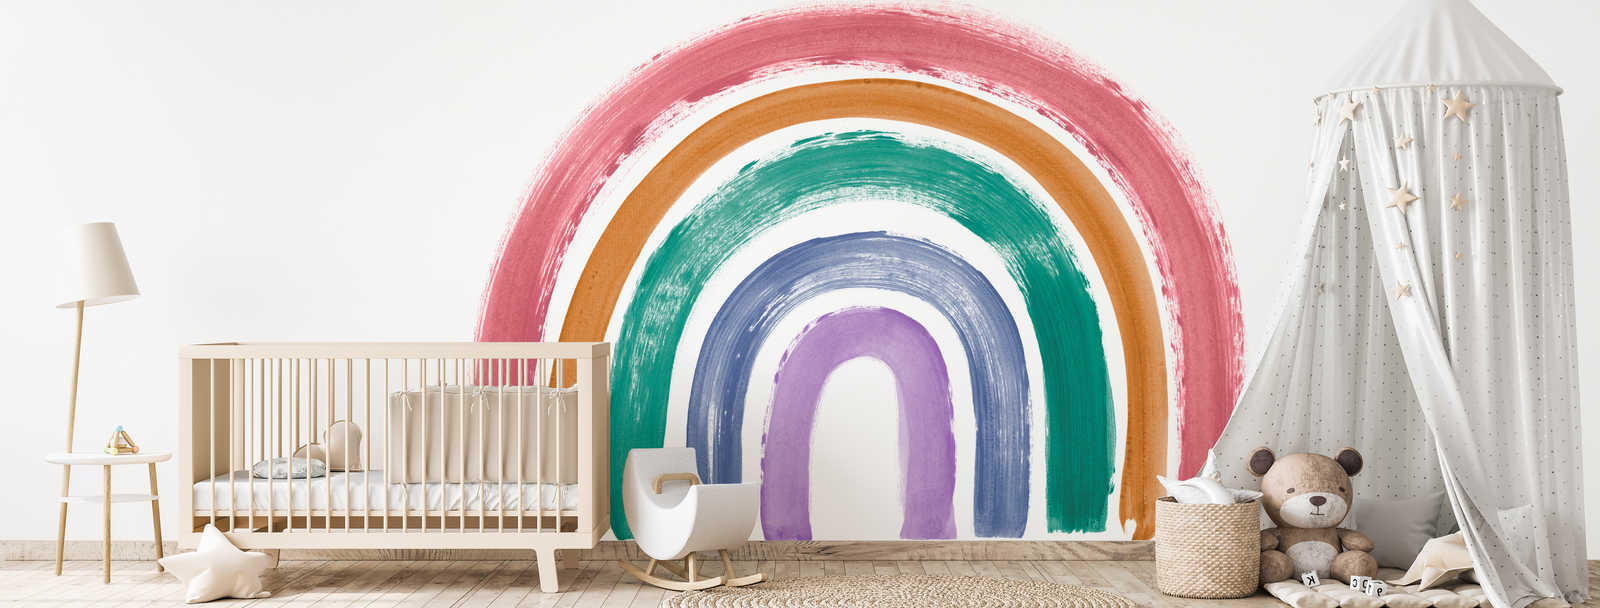             Photo wallpaper rainbow in bright retro colours
        